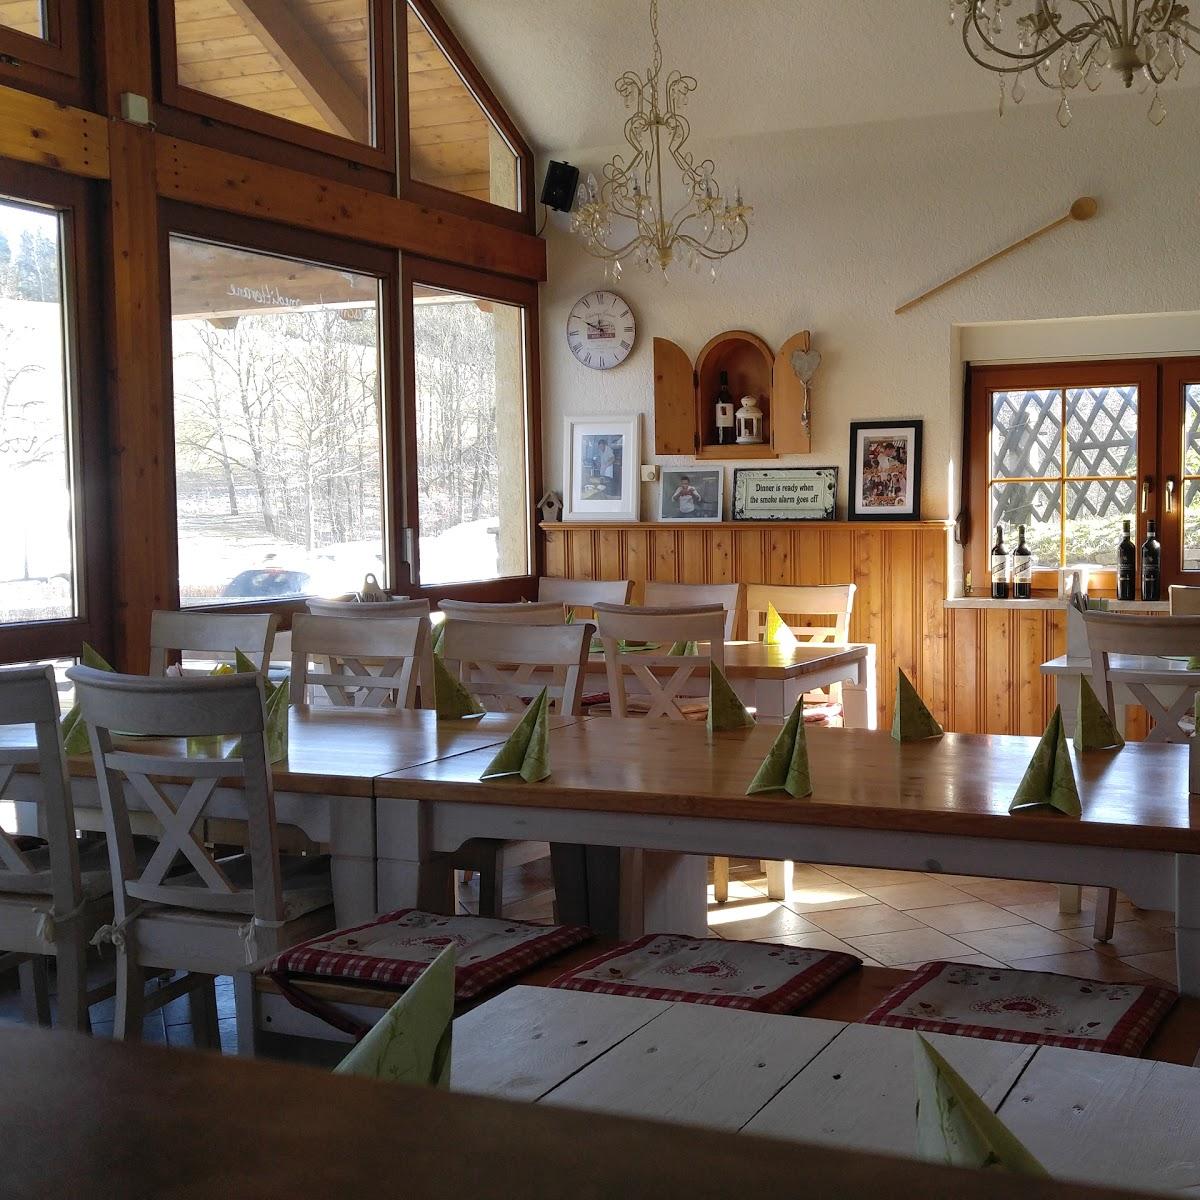 Restaurant "Tappas" in Thalheim-Erzgeb.